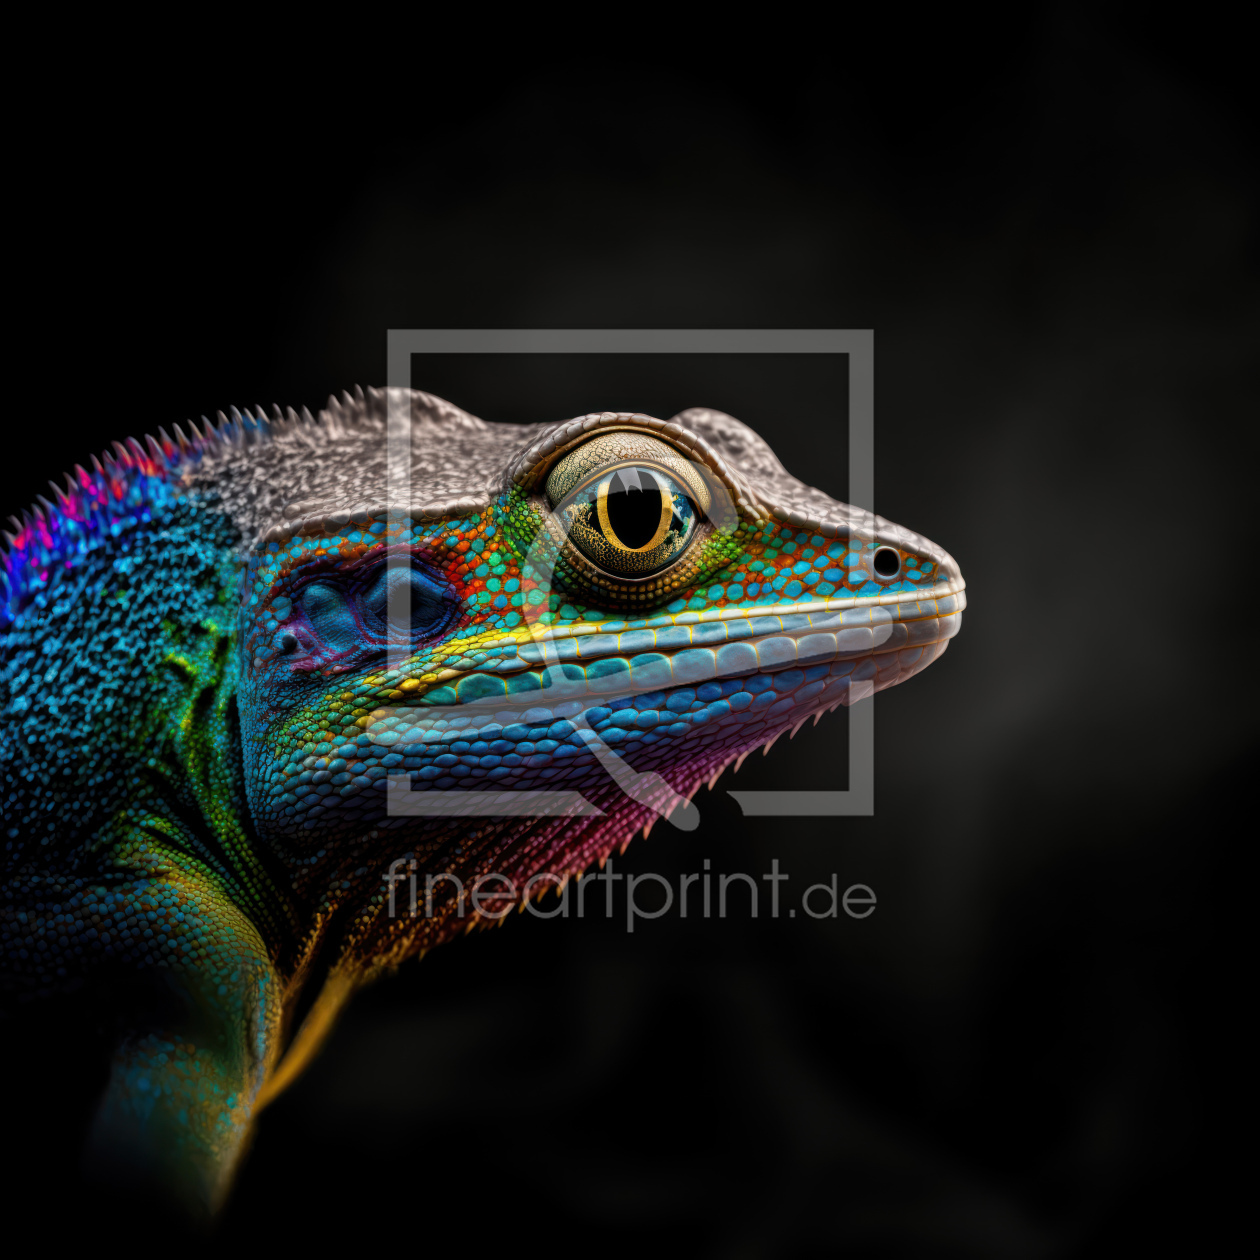 Bild-Nr.: 12703599 Regenbogen-Reptil erstellt von bildsprache